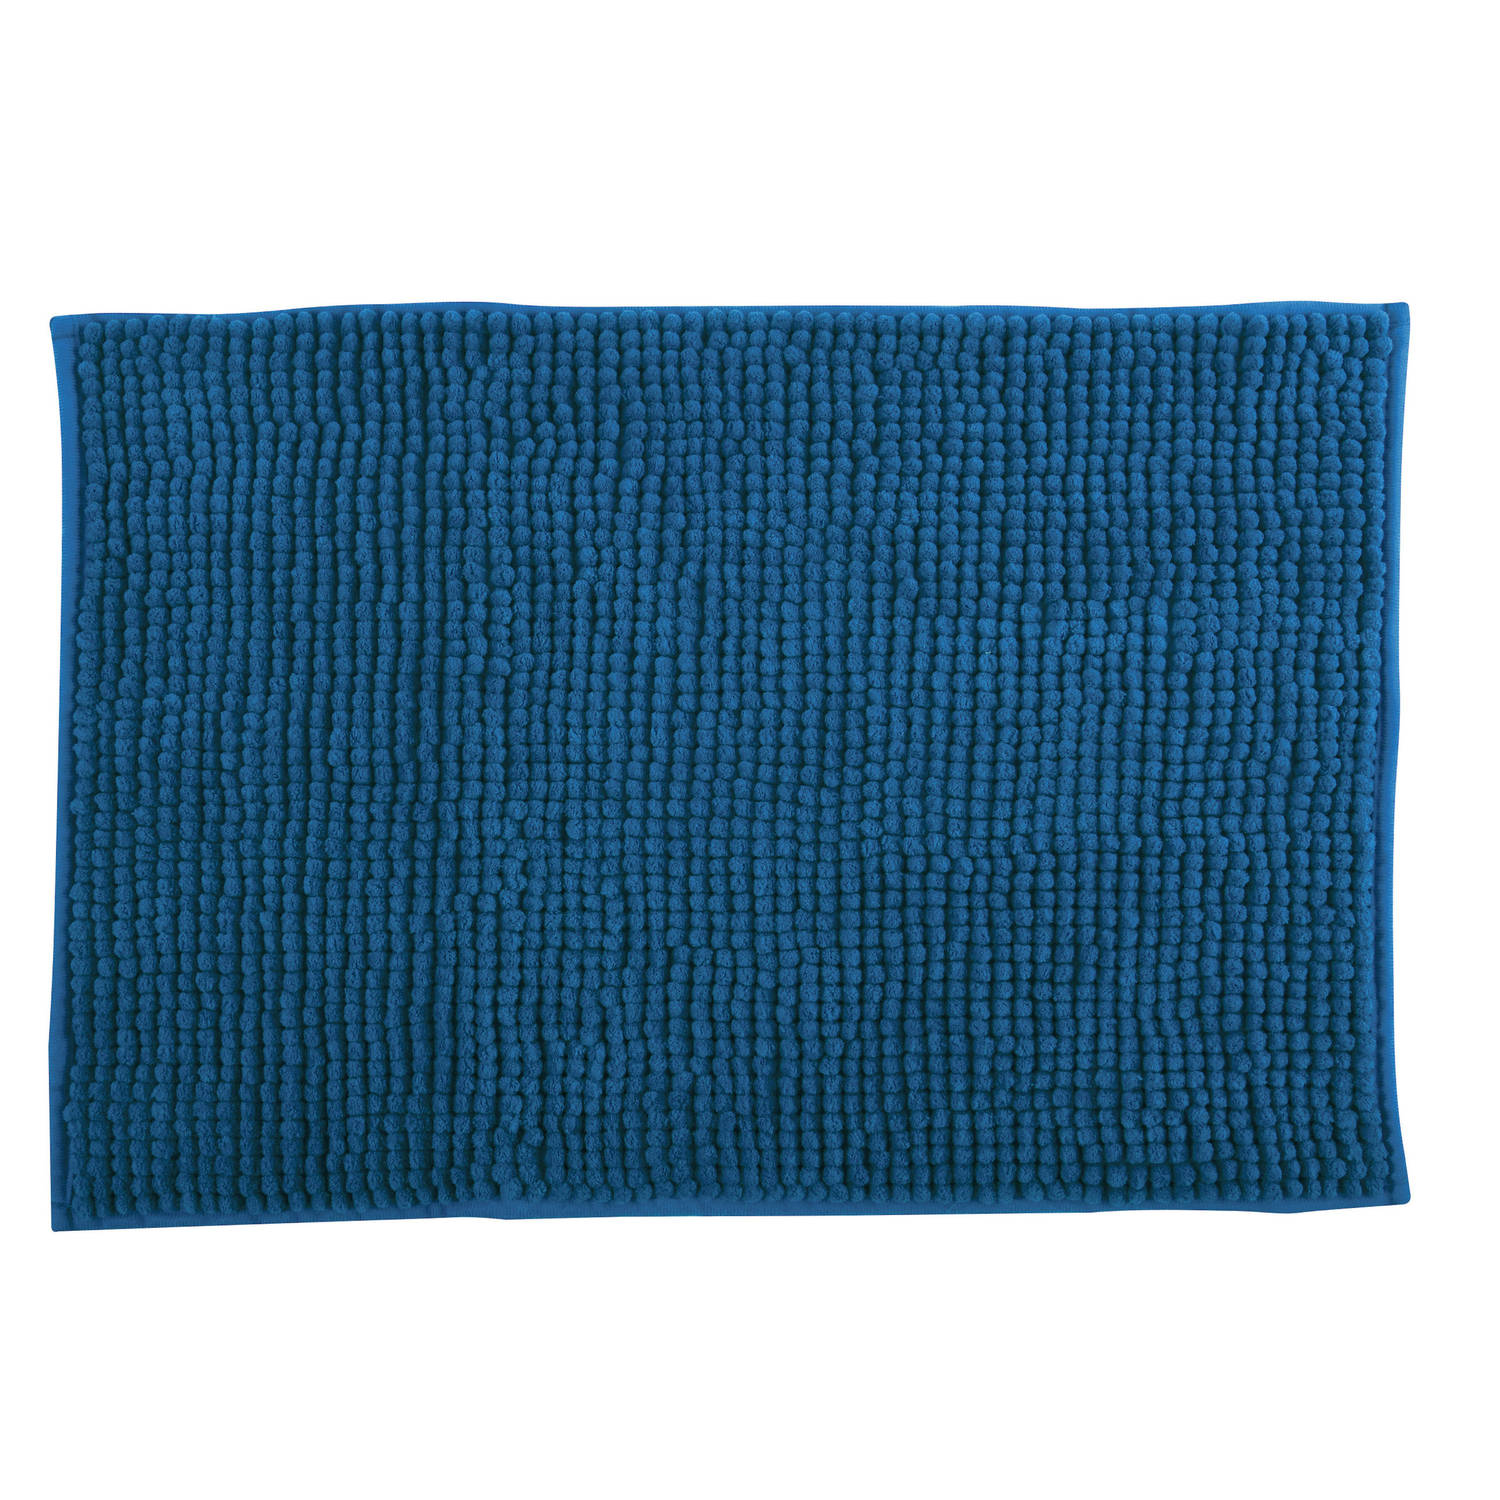 Msv Badkamerkleed-badmat Voor Op De Vloer Petrol Blauw 40 X 60 Cm